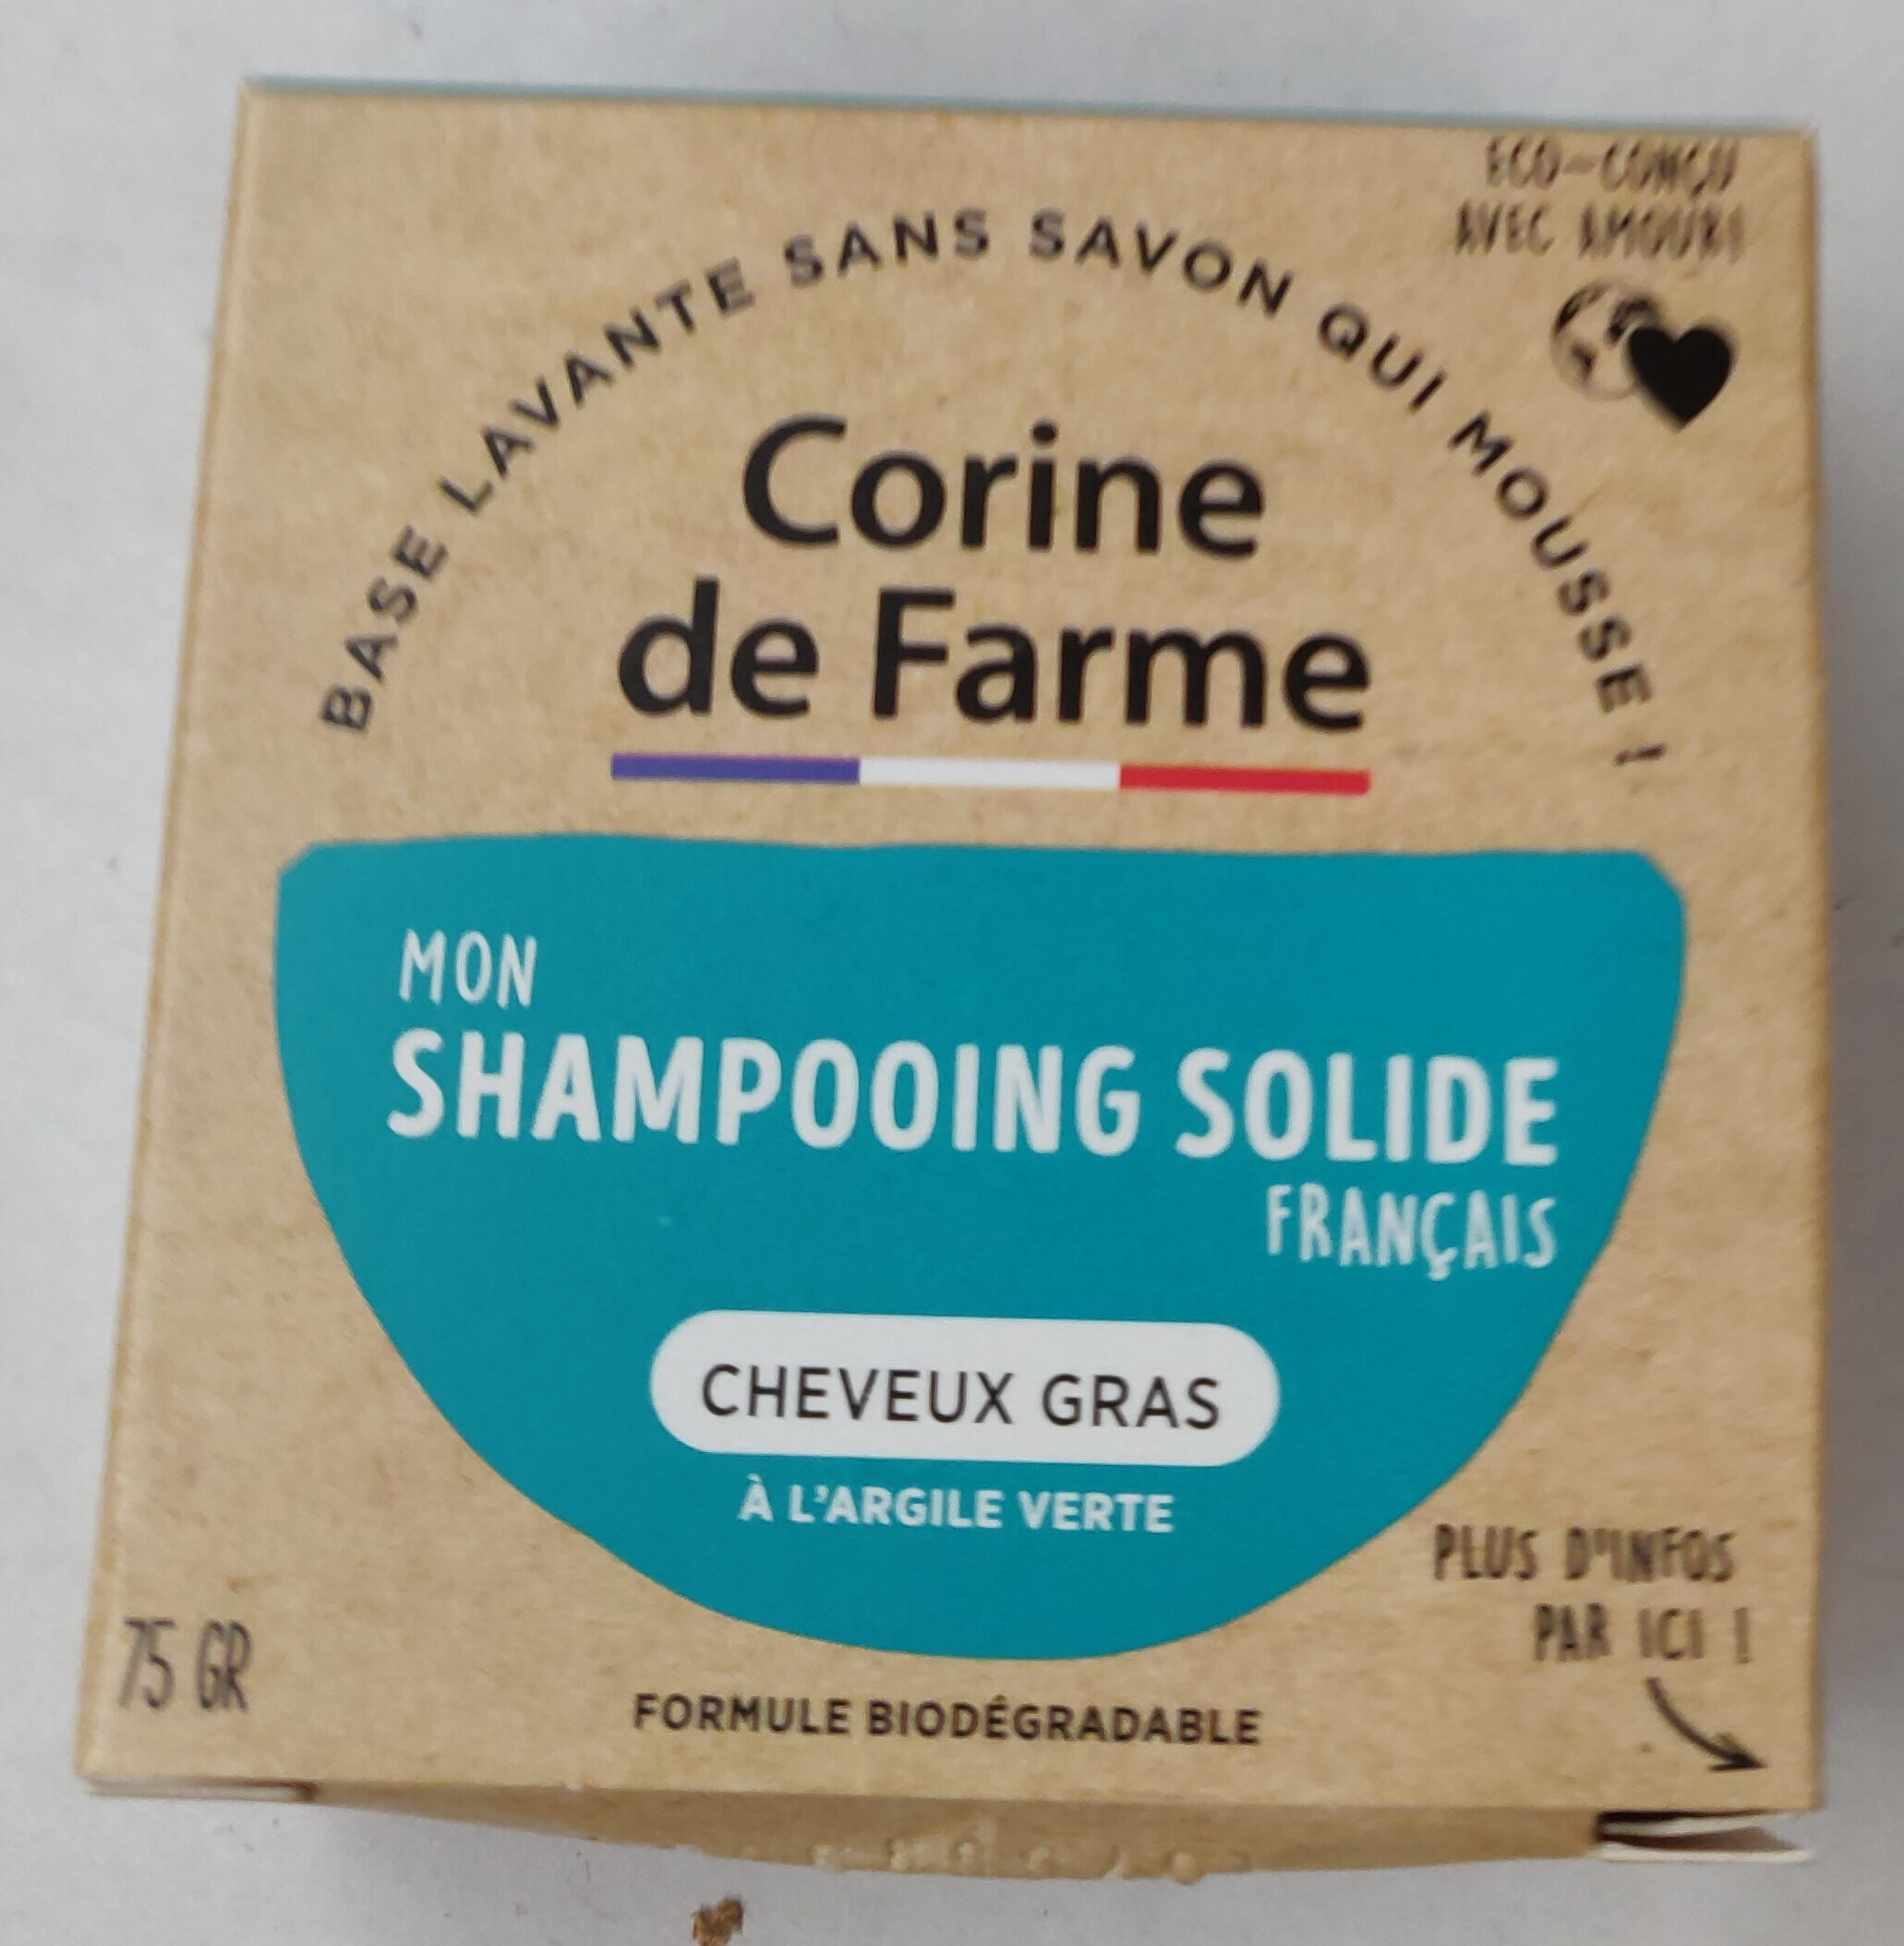 Shampooing solide - Produto - fr